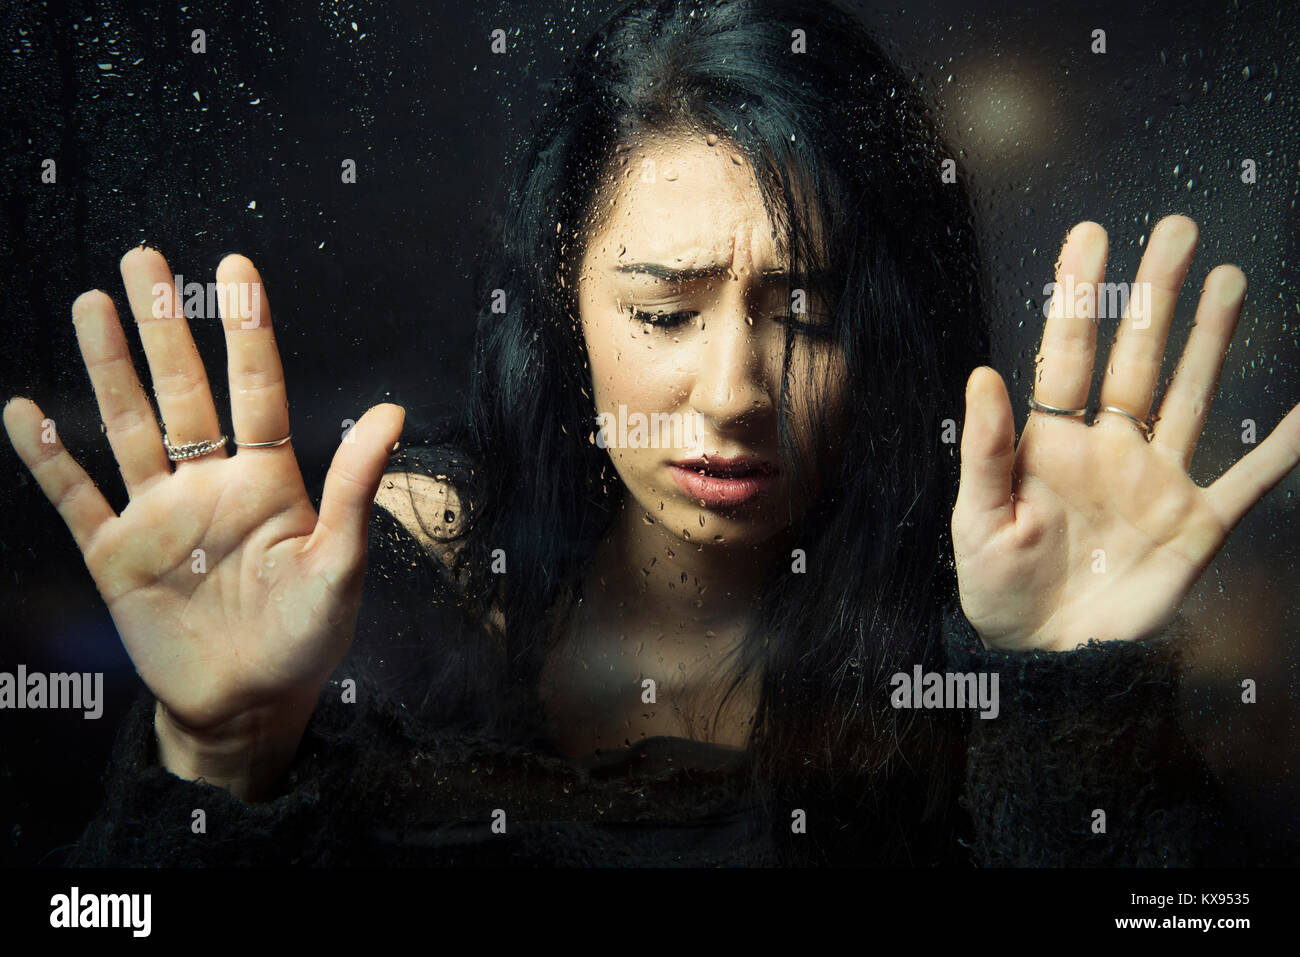 Distressed traurig deprimiert unglückliche Frau Hände gedrückt gegen Fenster nach unten schaut bei regnerischen Fenster filmische Nahaufnahme portrait Stockfoto